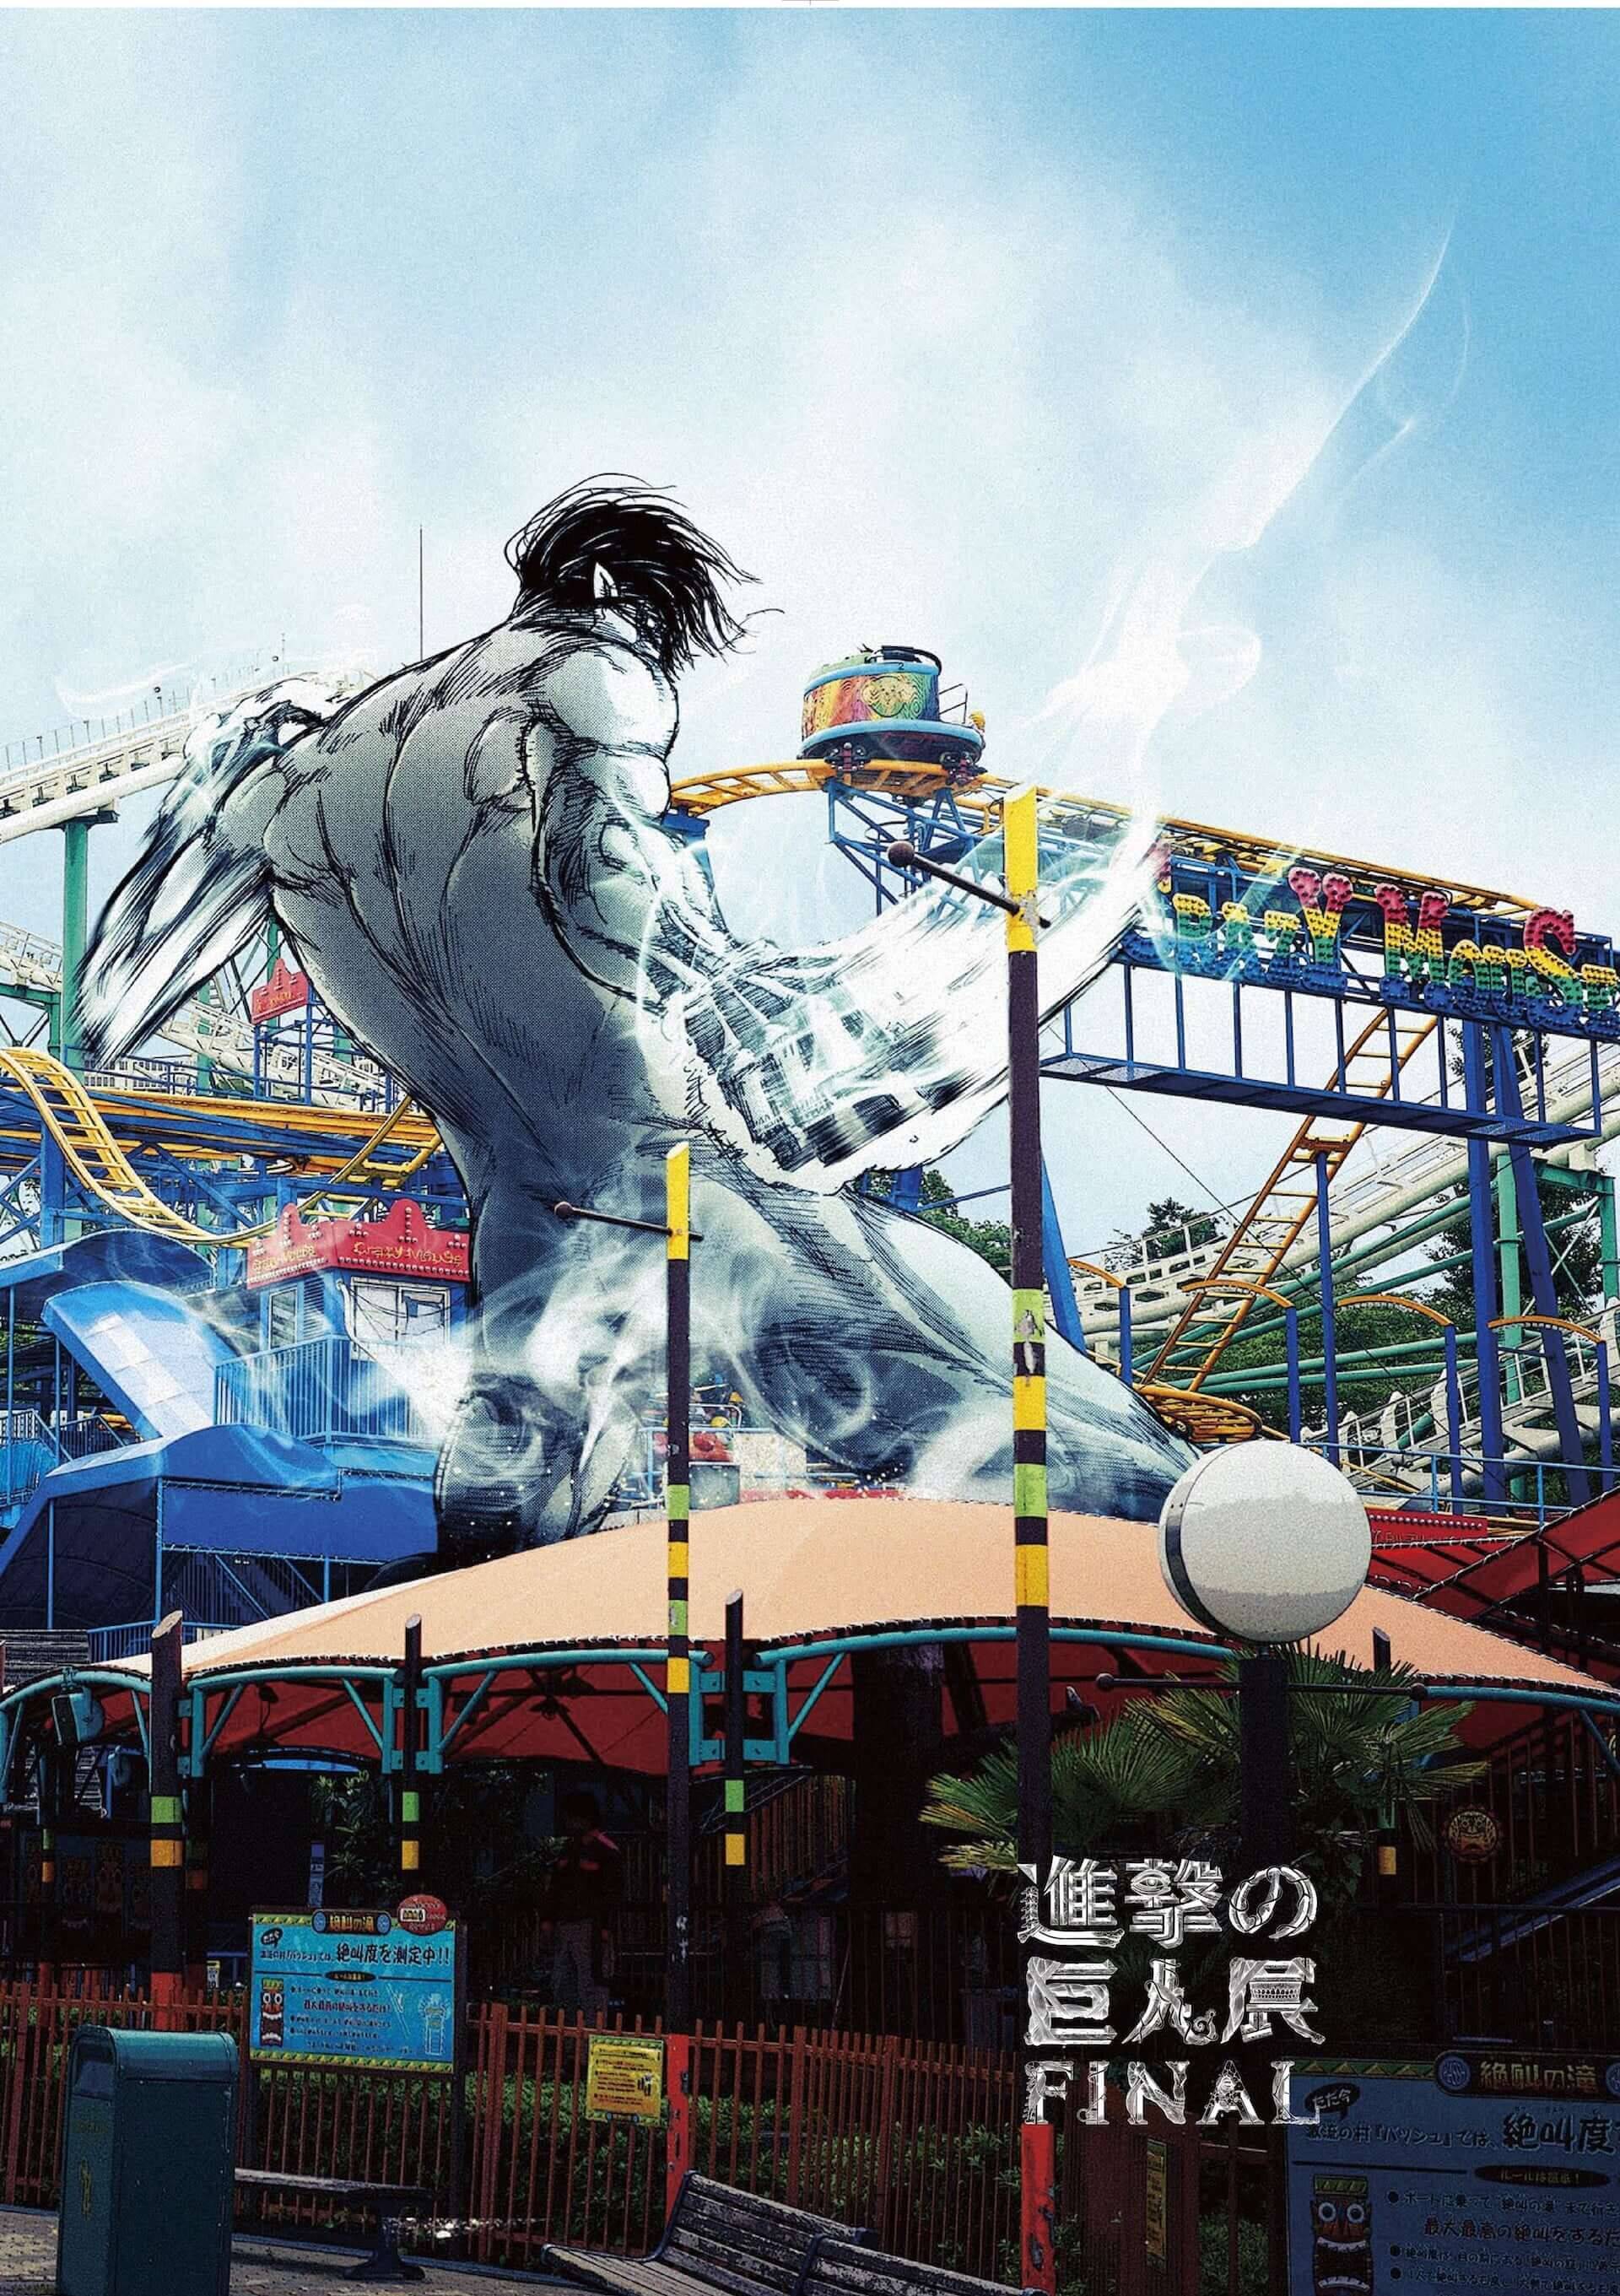 進撃の巨人がひらパーに襲来 進撃の巨人展finalinひらかたパーク が開催 大阪展限定描き下ろしアニメイラストも公開 19年9月13日 エキサイトニュース 4 5